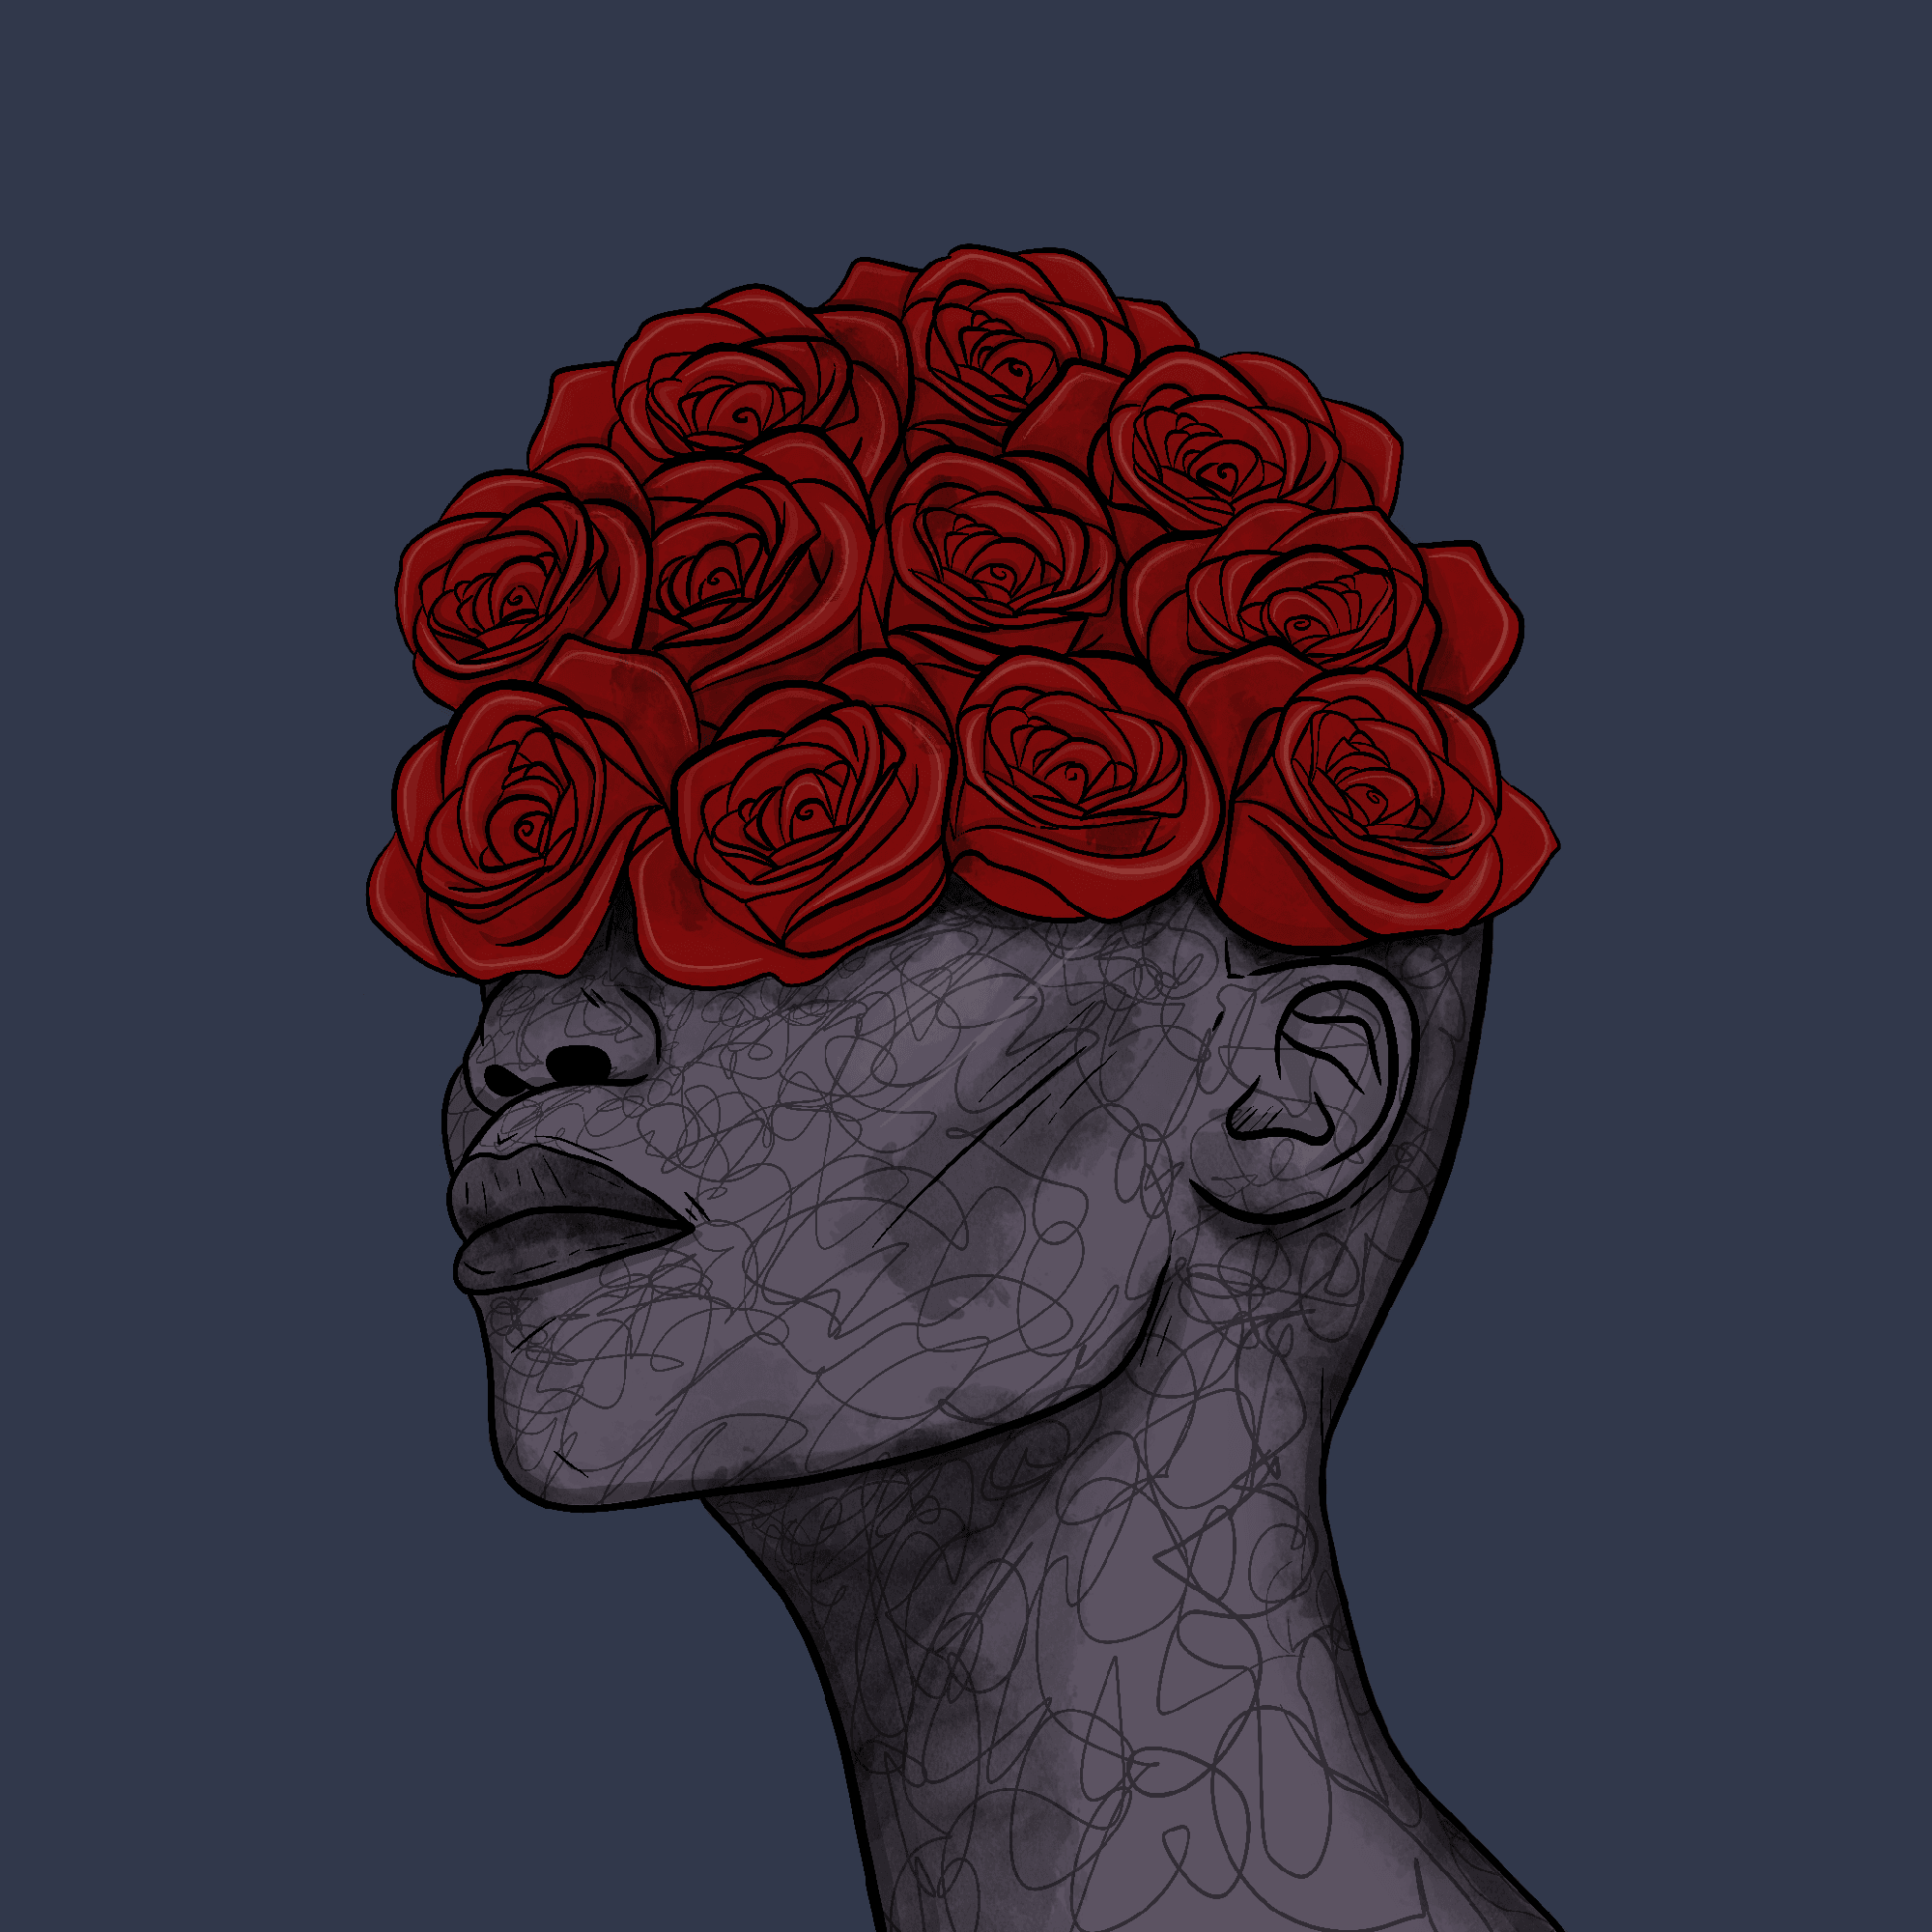 Queen of Roses #232